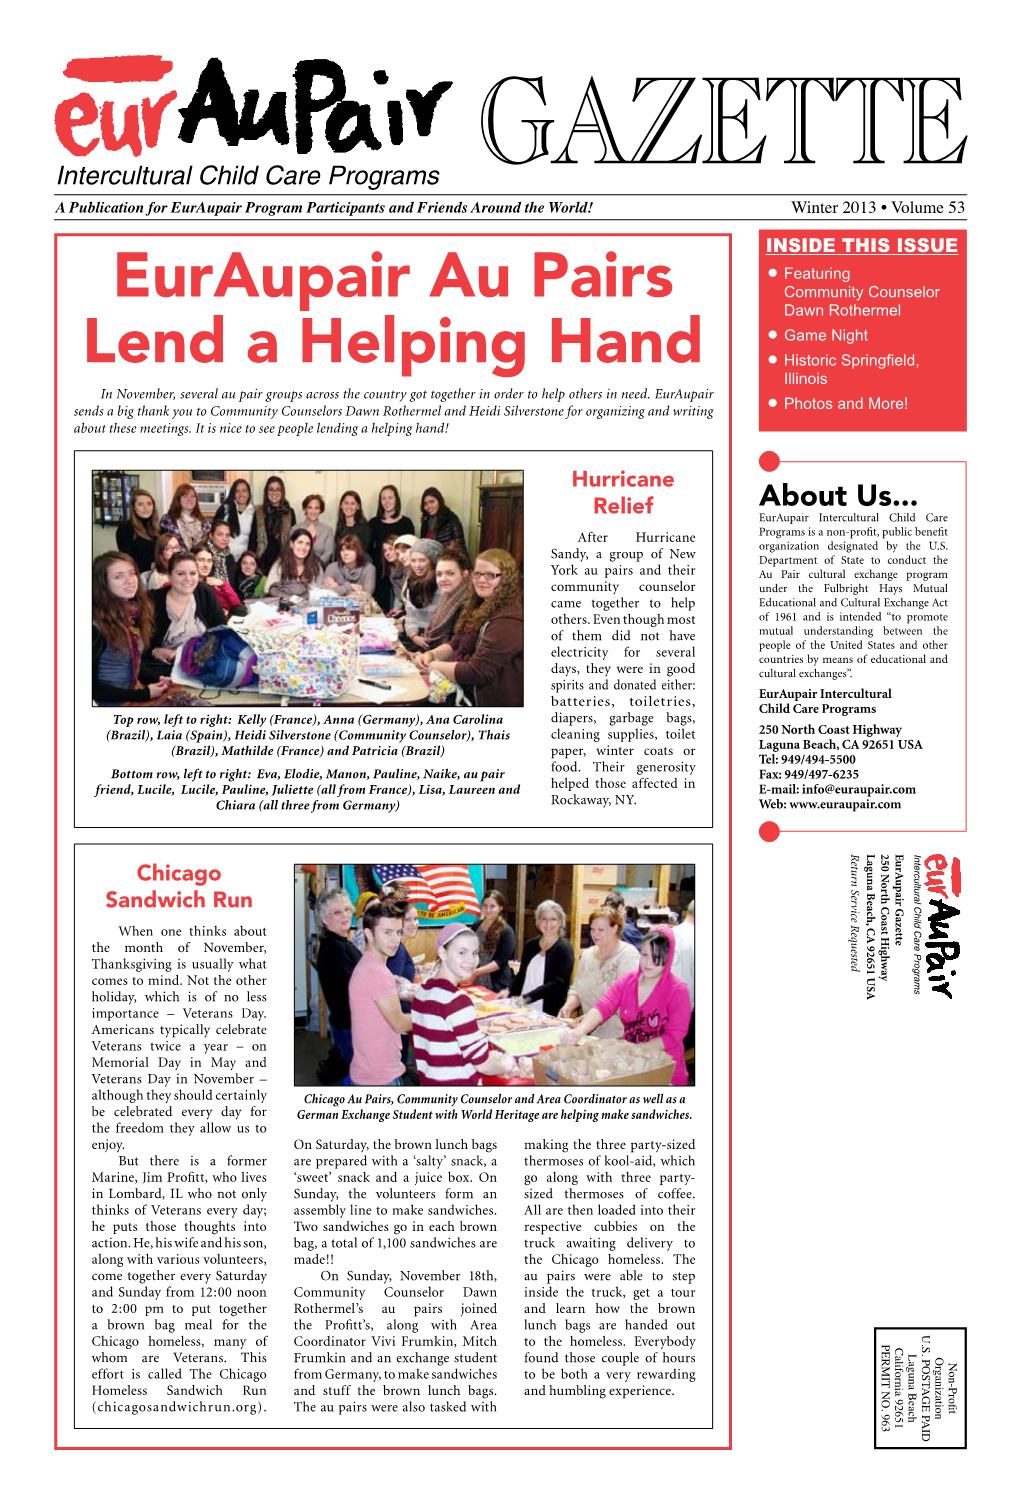 Euraupair Au Pairs Lend a Helping Hand | Gazette Winter 2013